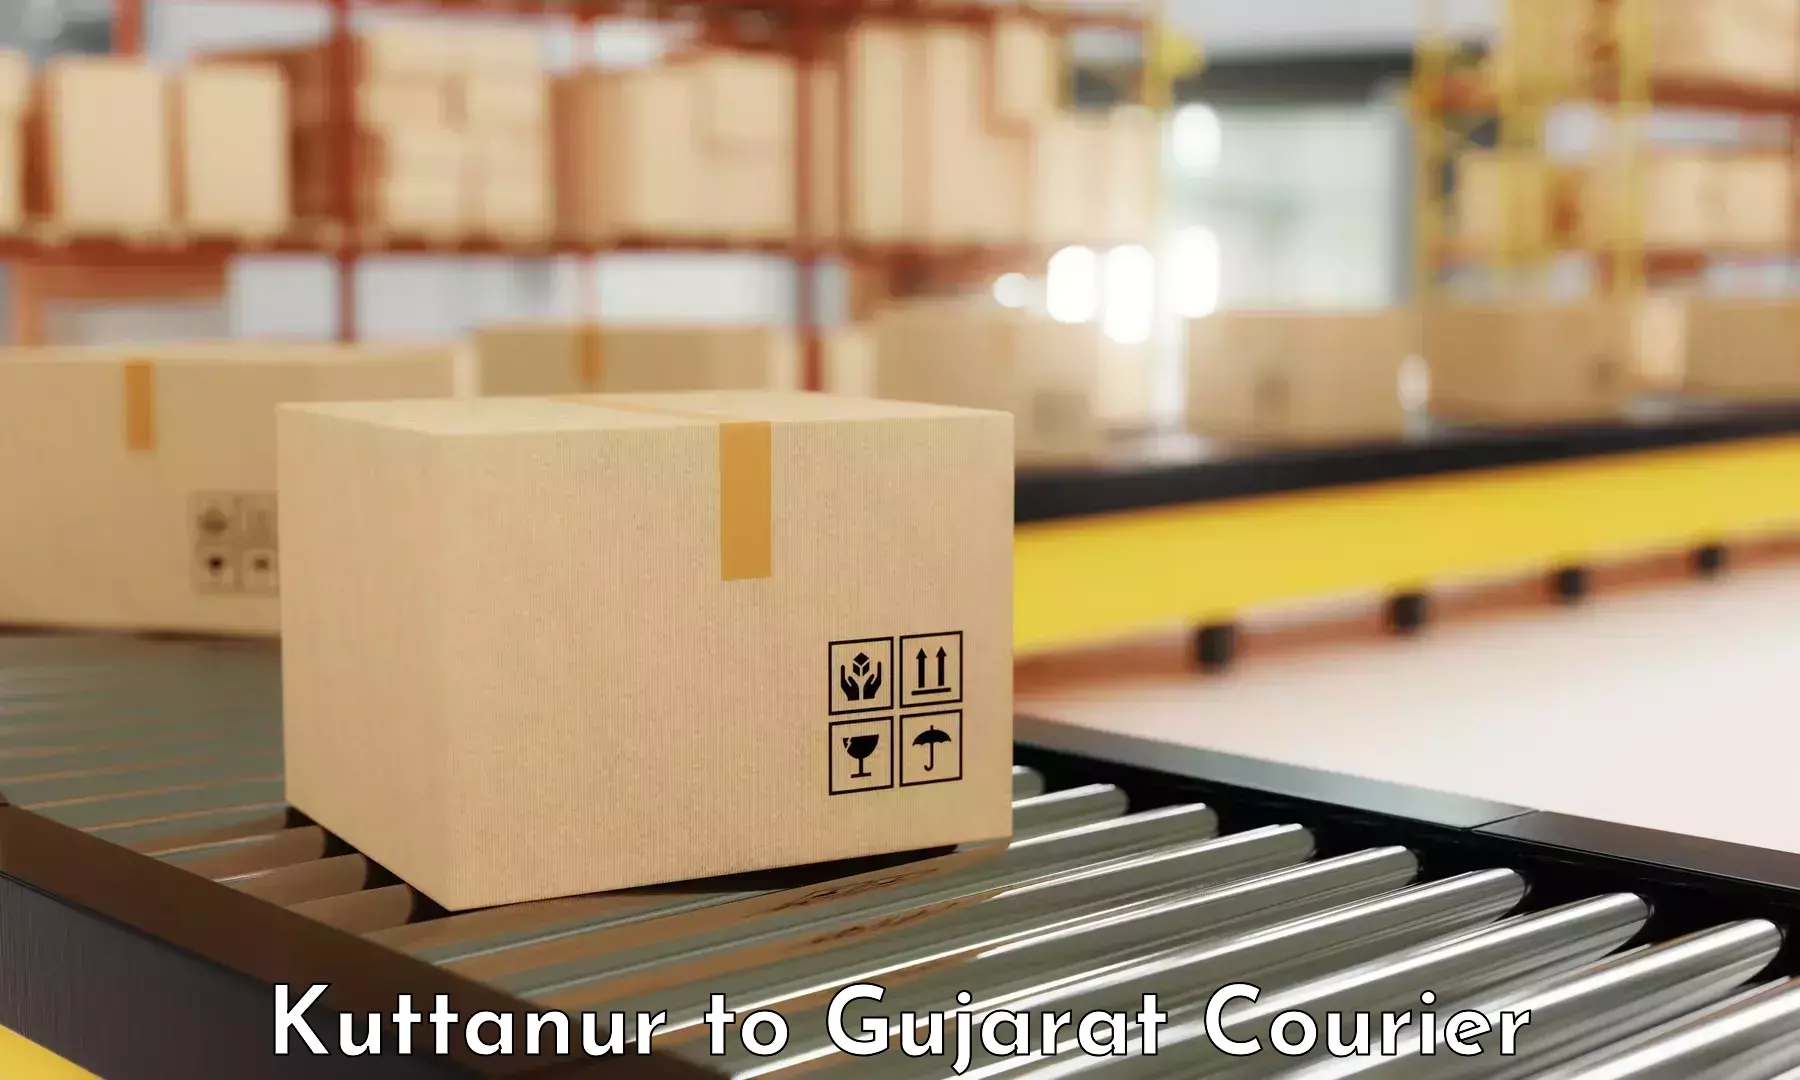 Cargo courier service Kuttanur to Gujarat